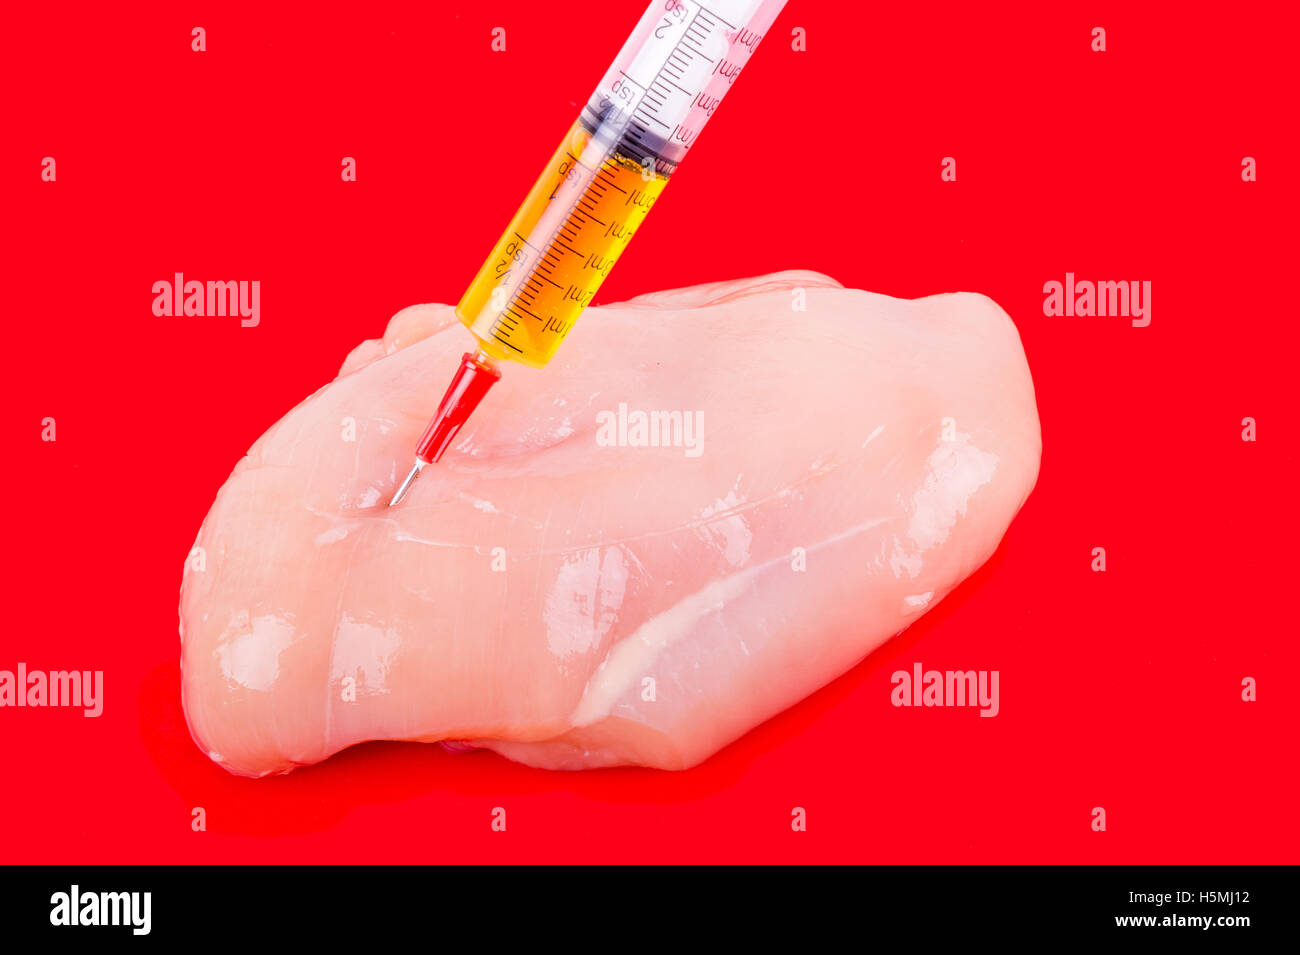 Jeringa con líquido inyectado a un trozo de carne. Ilustración conceptual de hormonas y antibióticos en la producción de alimentos. Foto de stock